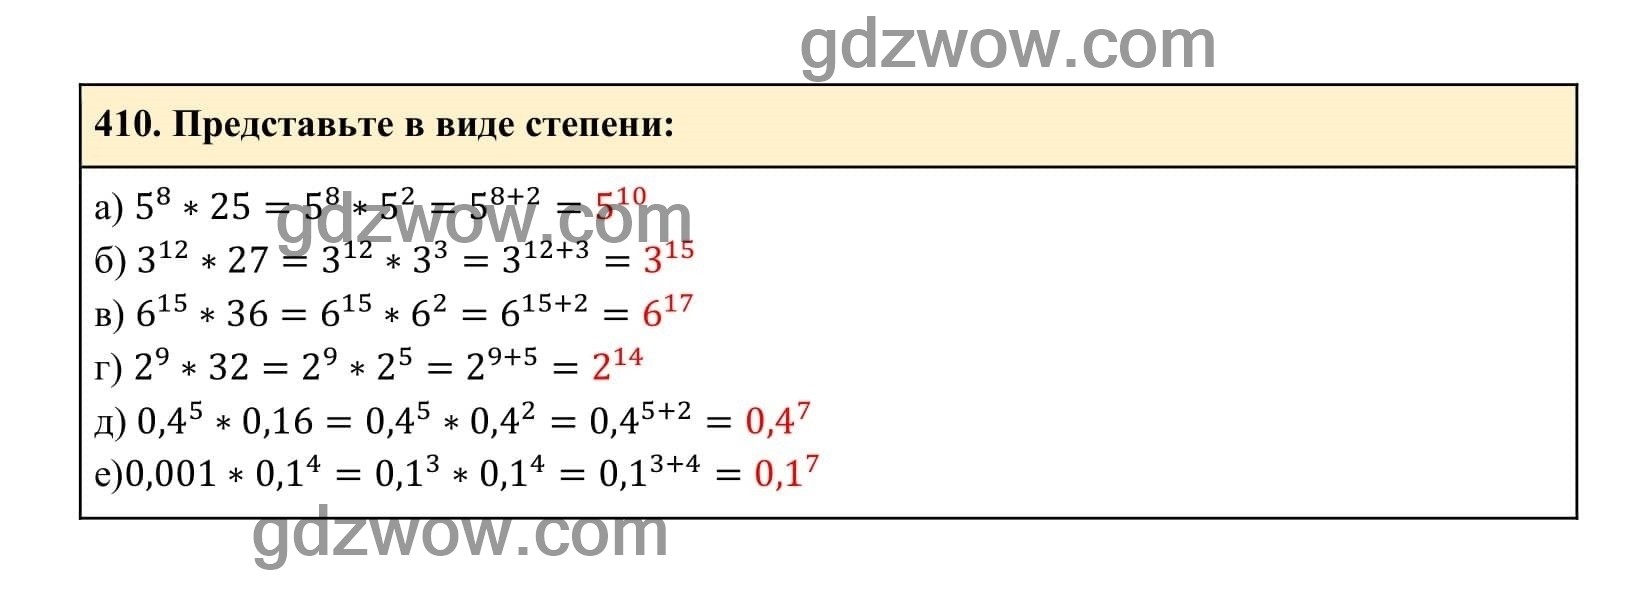 Упражнение 410 - ГДЗ по Алгебре 7 класс Учебник Макарычев (решебник) - GDZwow